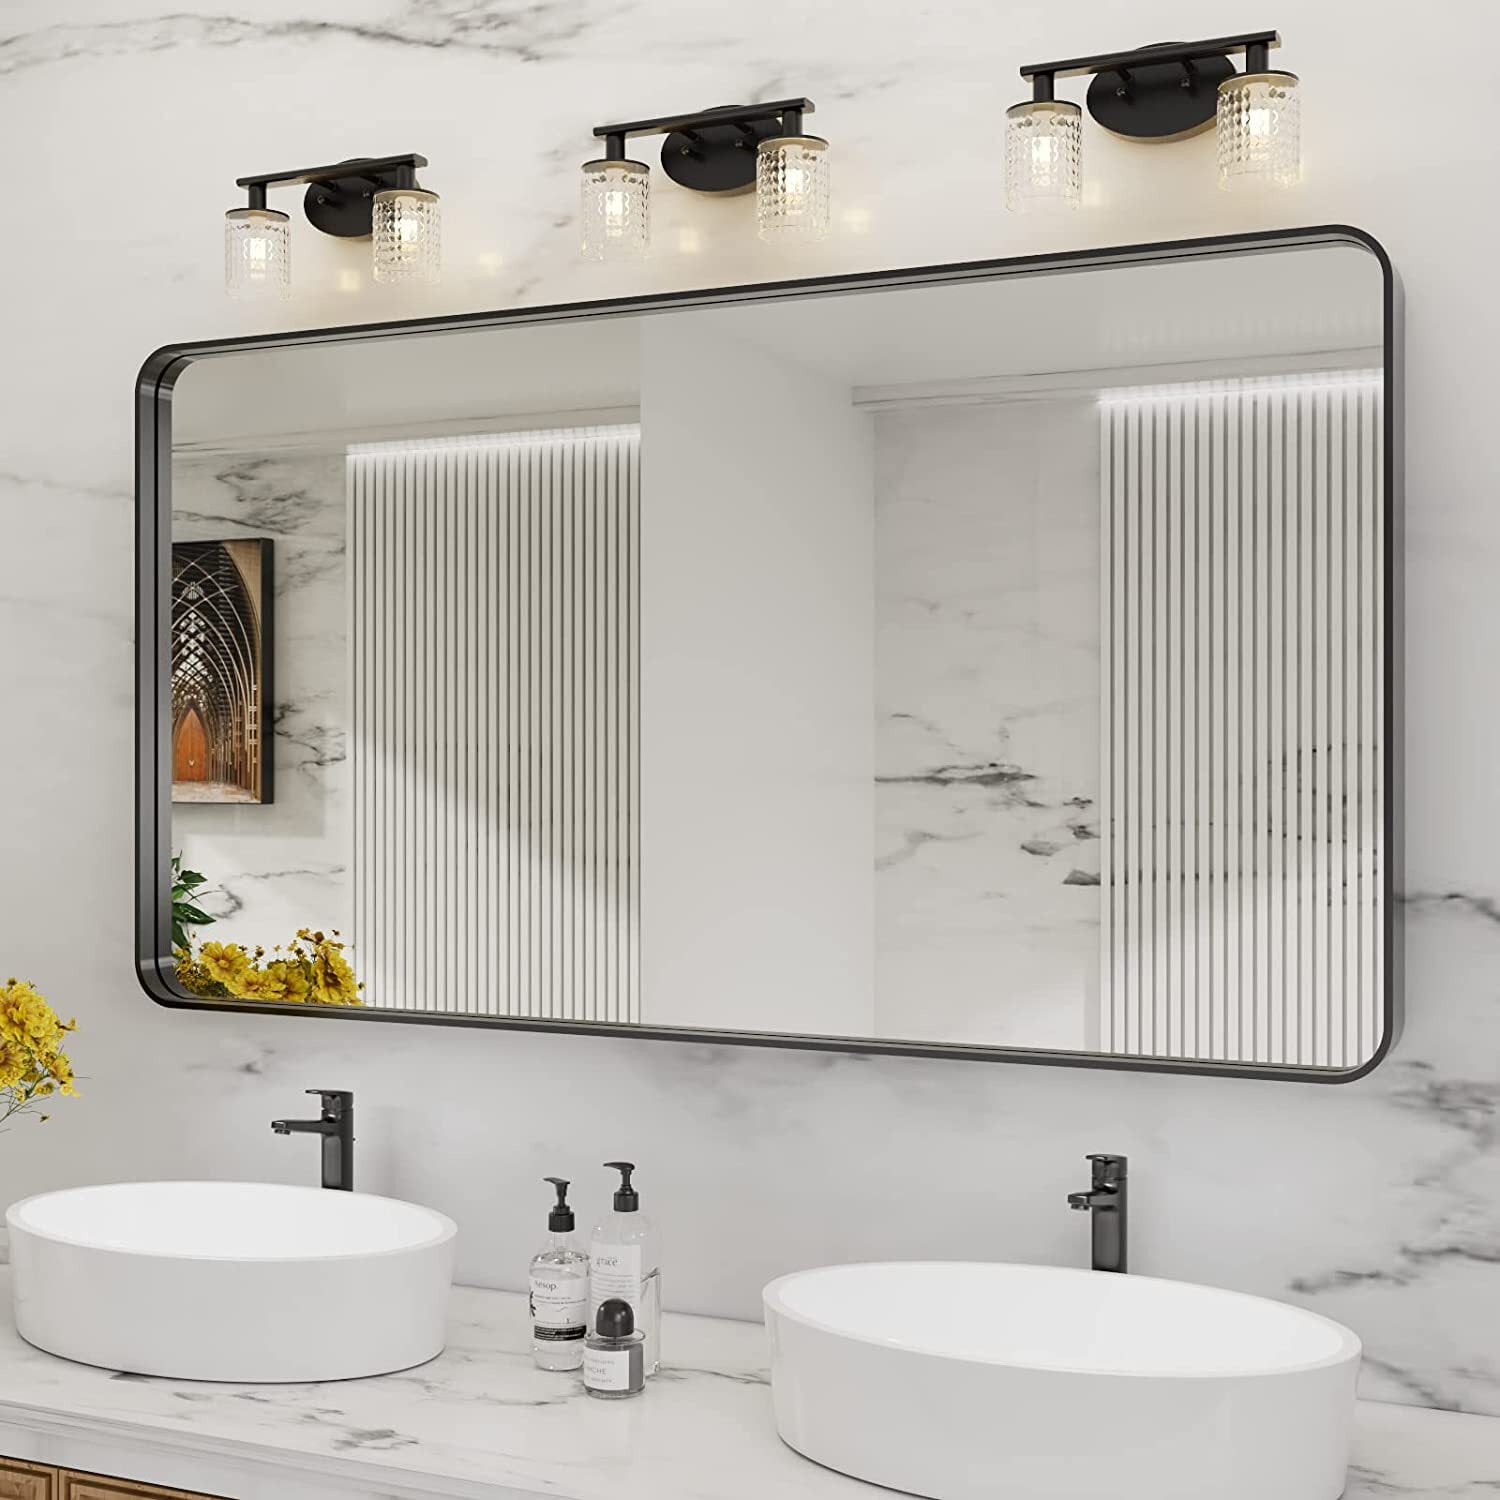 allen + roth 24-in x 30-in Black Framed Bathroom Vanity Mirror